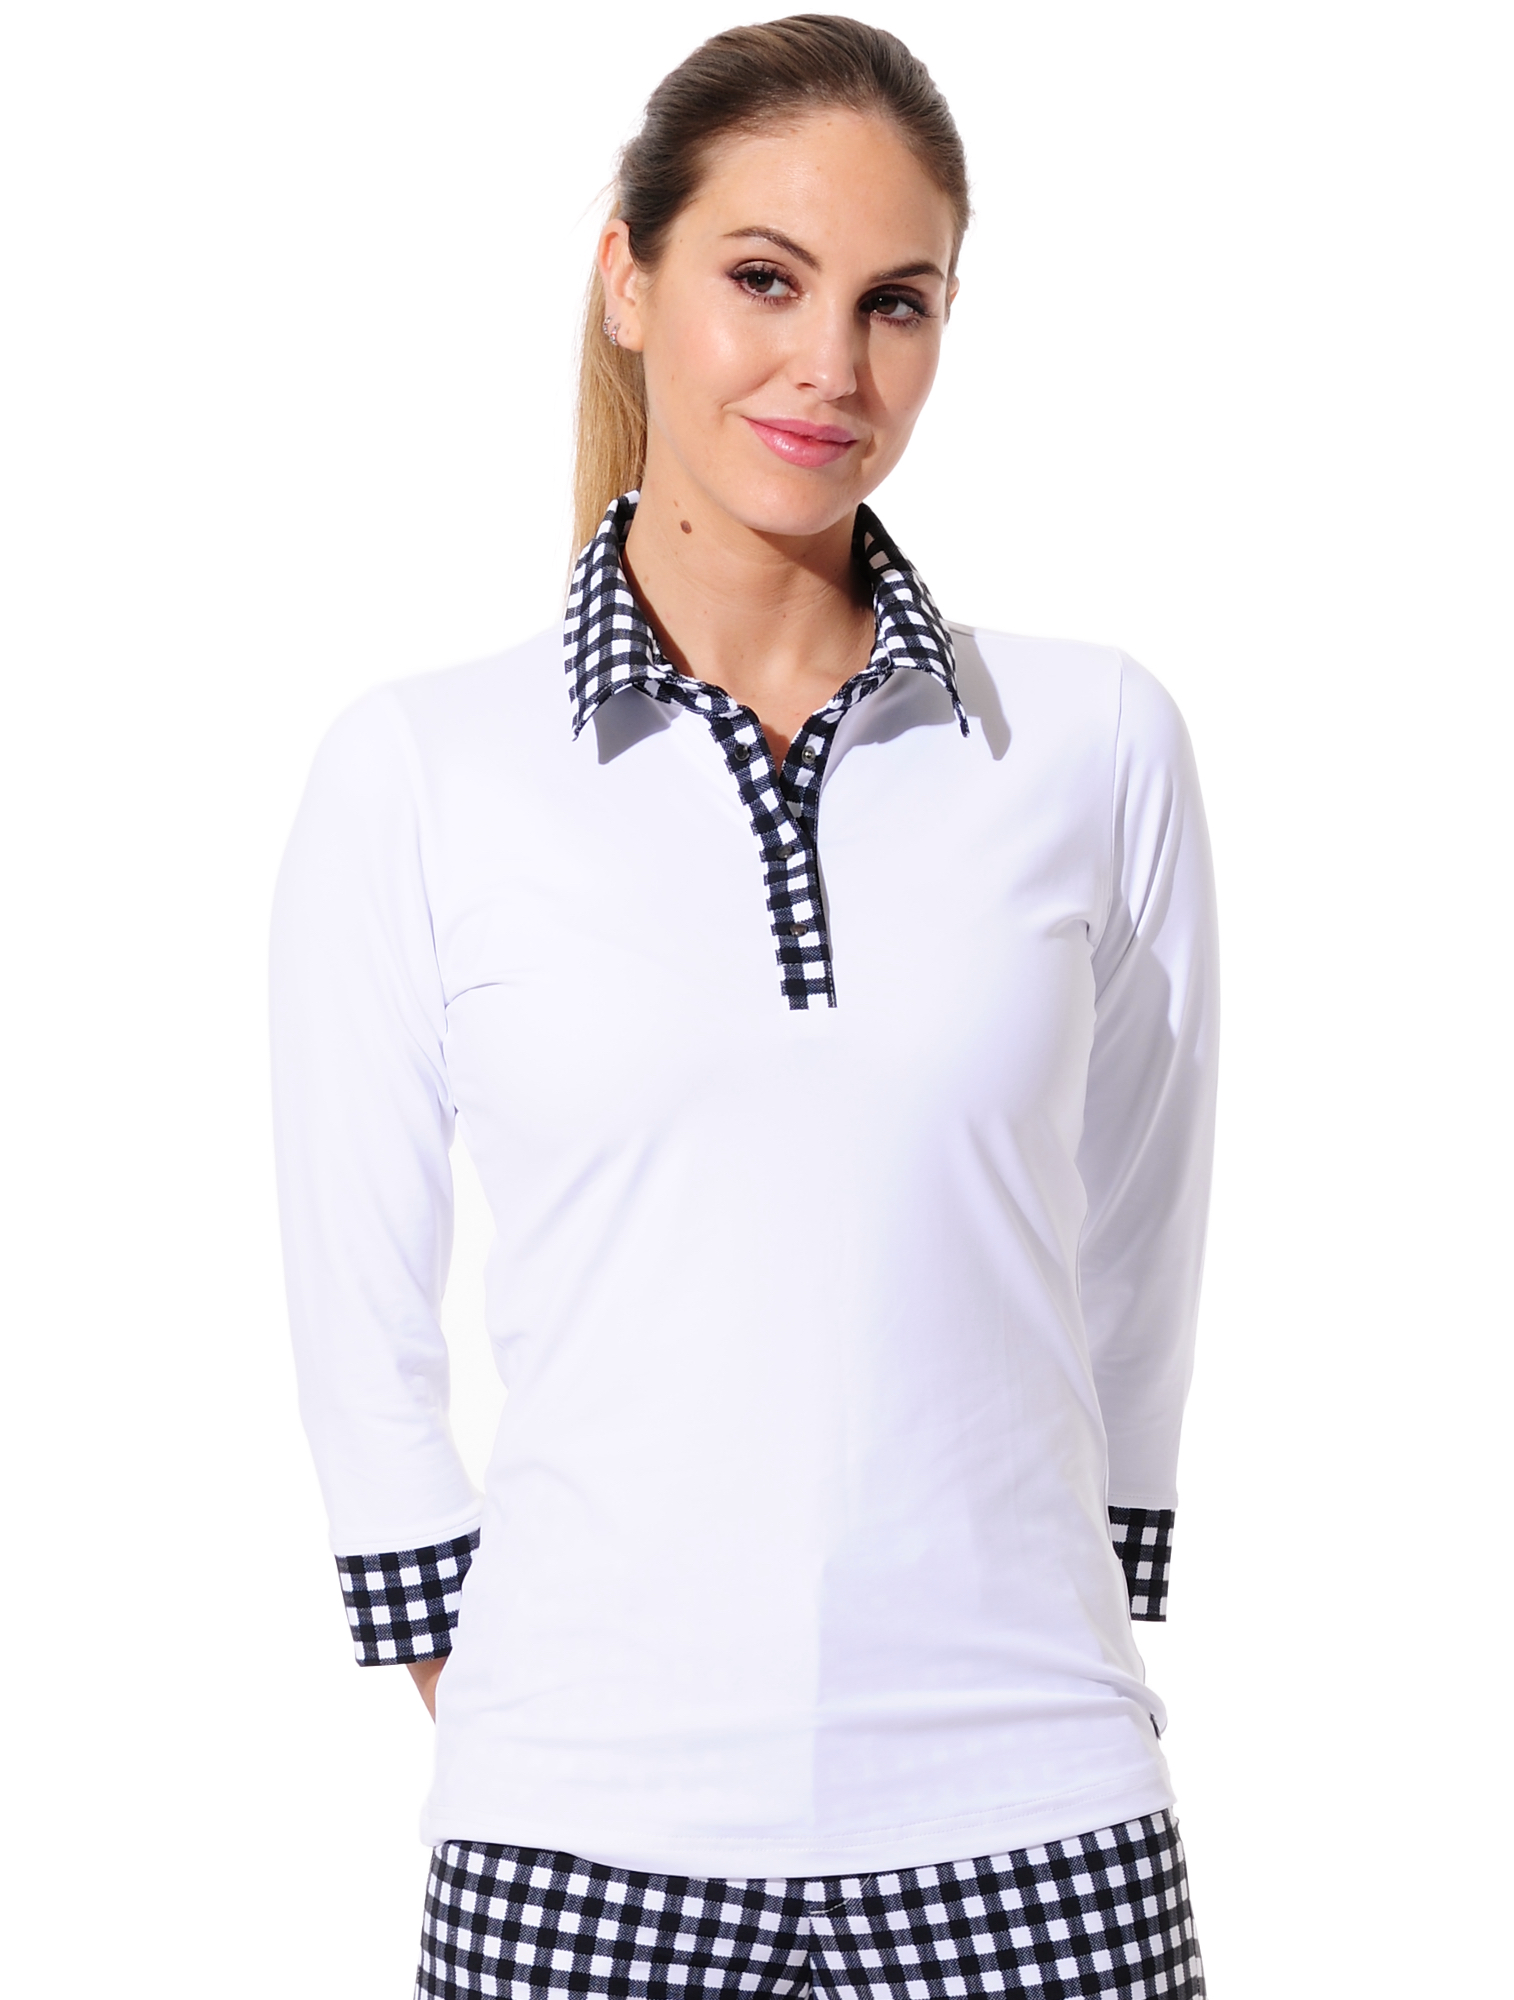 Jersey golf polo shirt white/black 